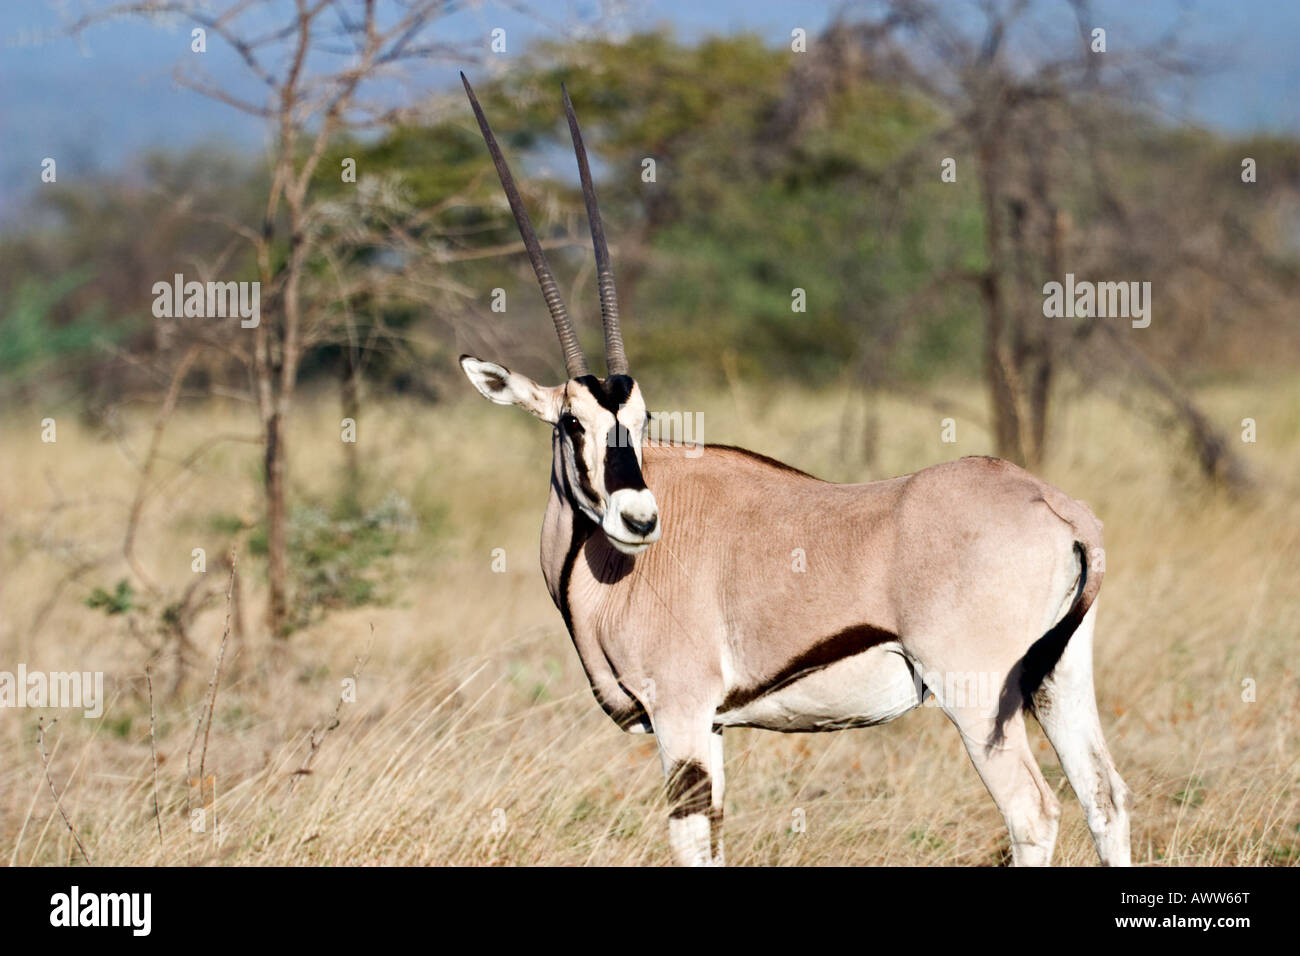 Oryx de beisa (Oryx gazella beisa), Parc national Awash, en Éthiopie, l'Afrique Banque D'Images